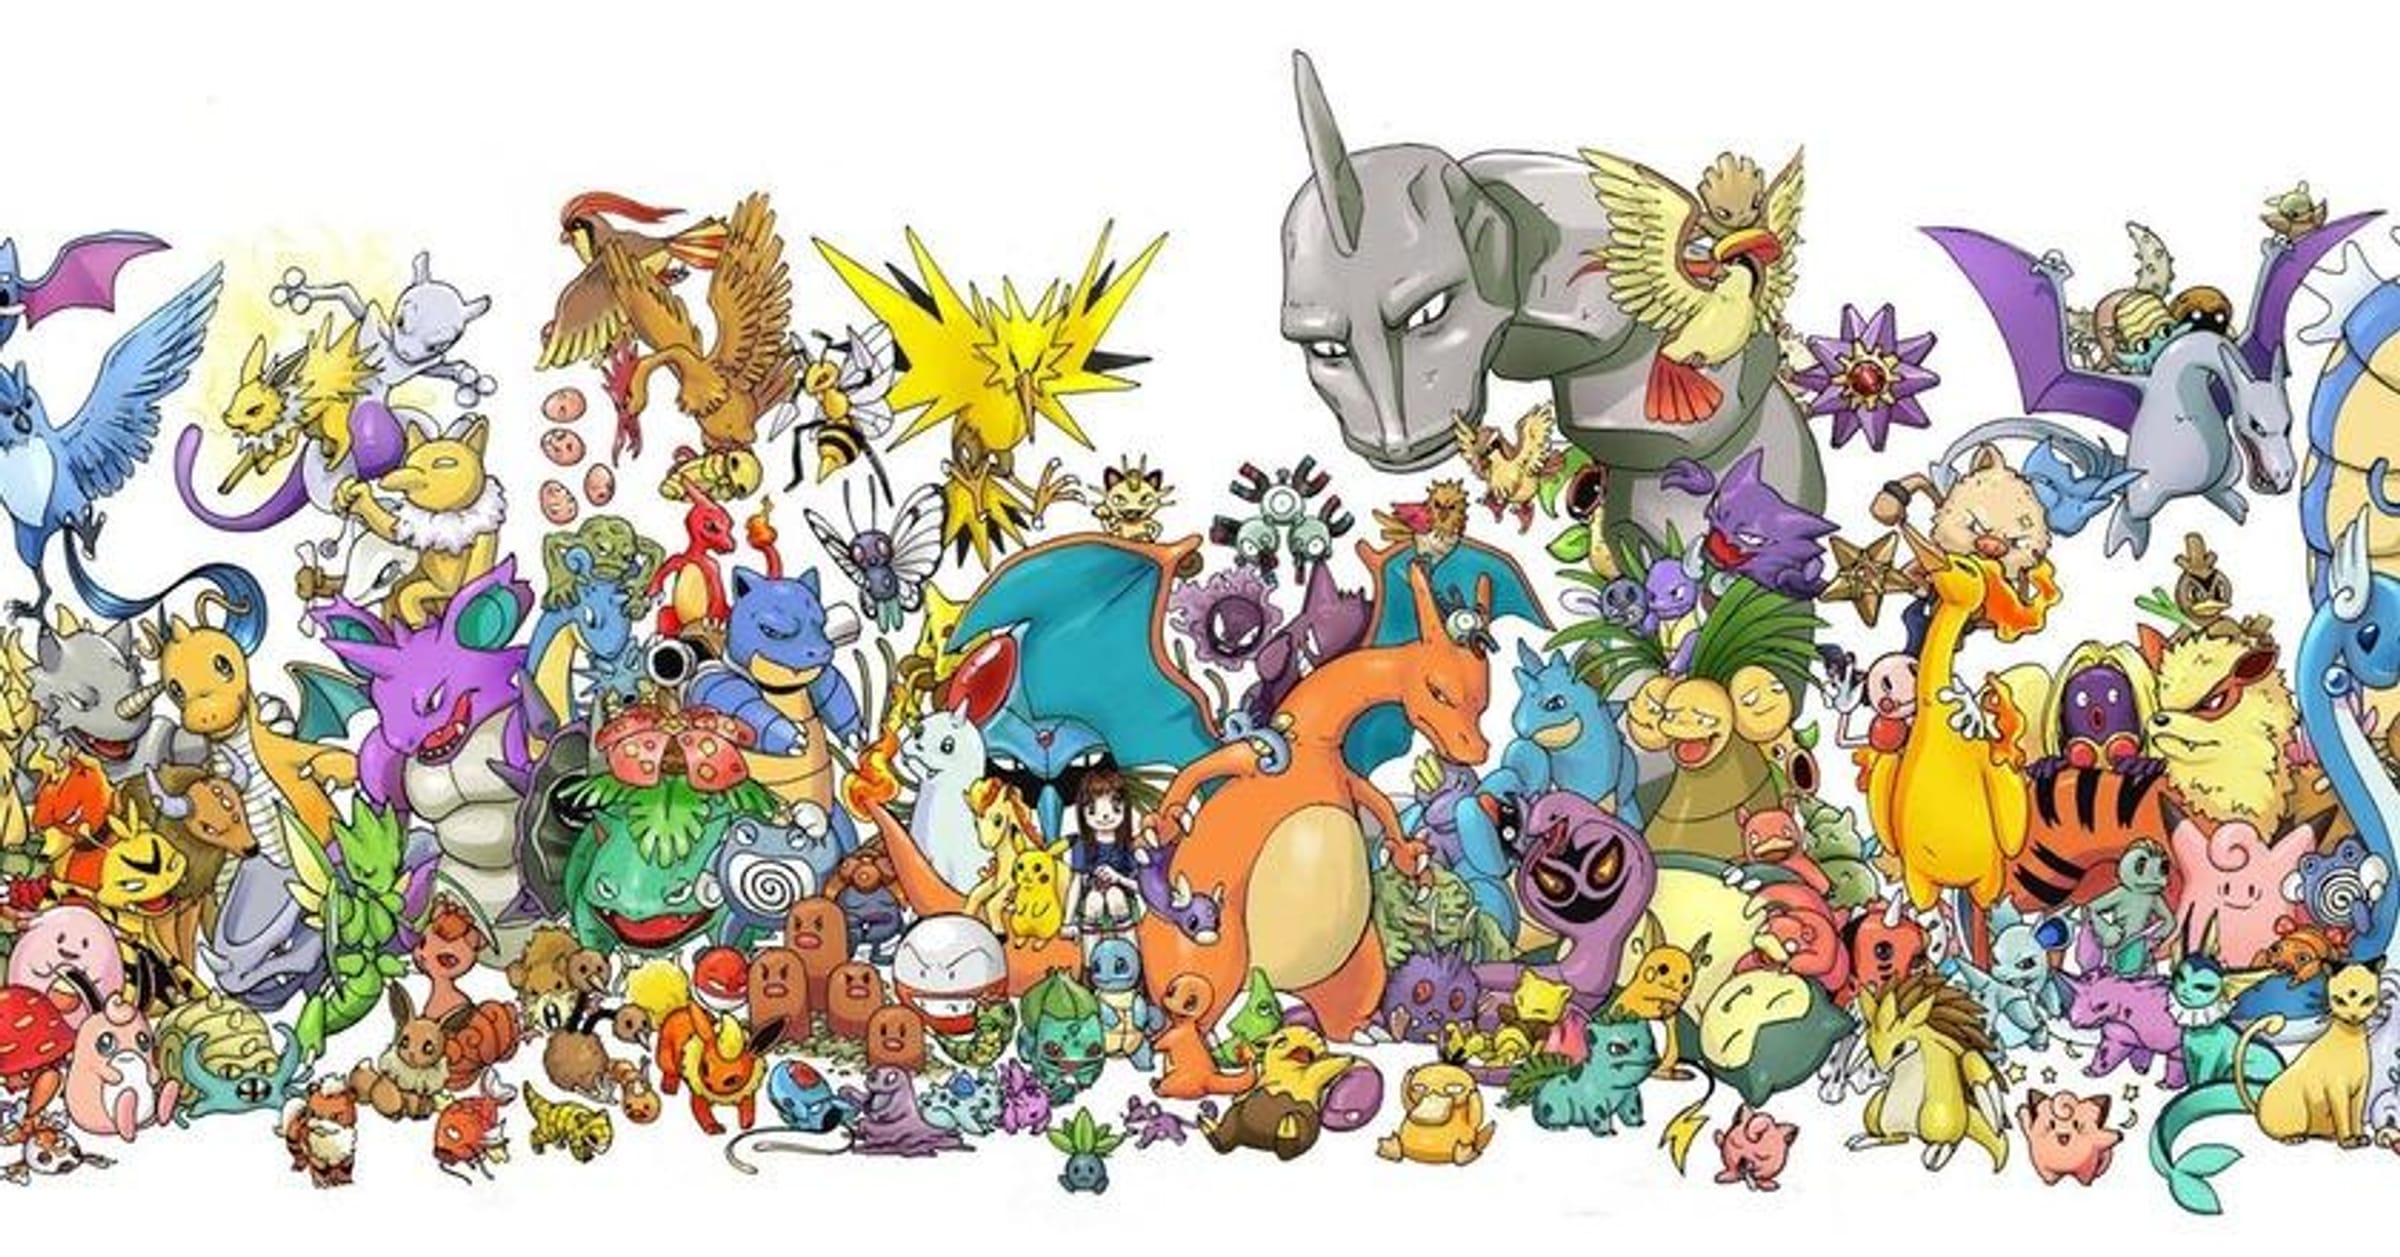 Special: Pokémon Origins